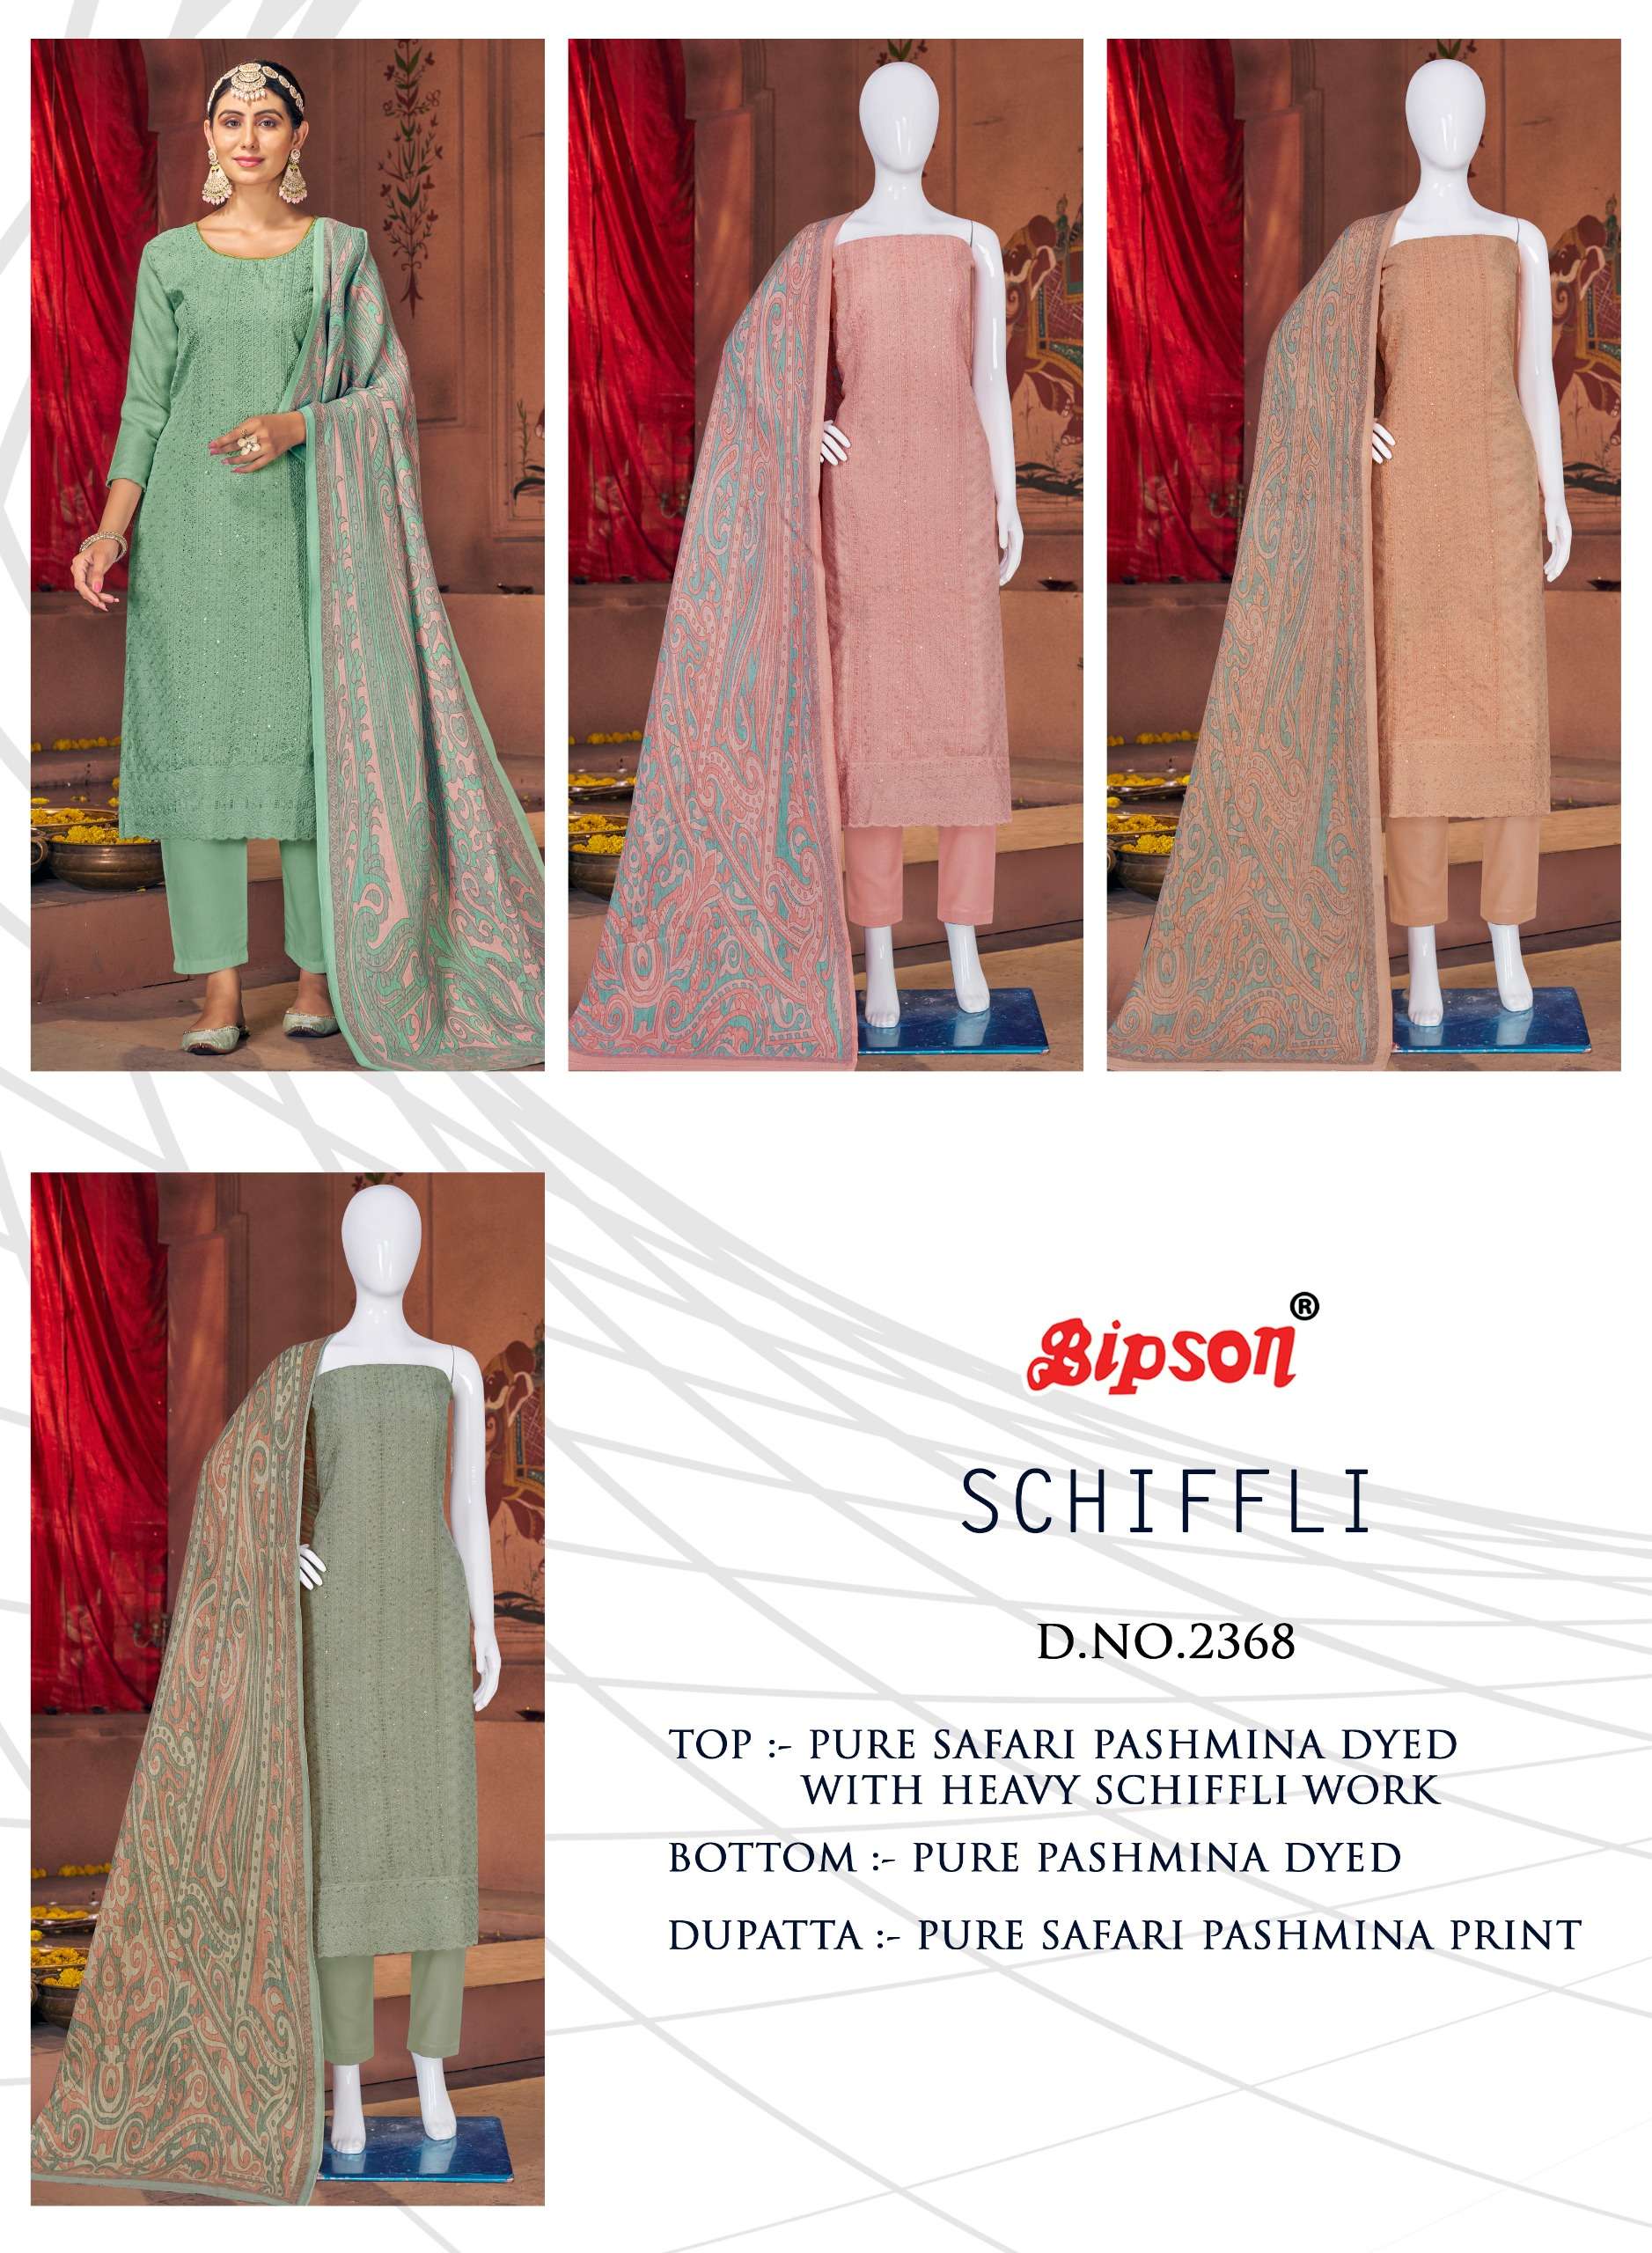 bipson schiffli 2368 colours latest designer party wear suit wholesaler surat gujarat